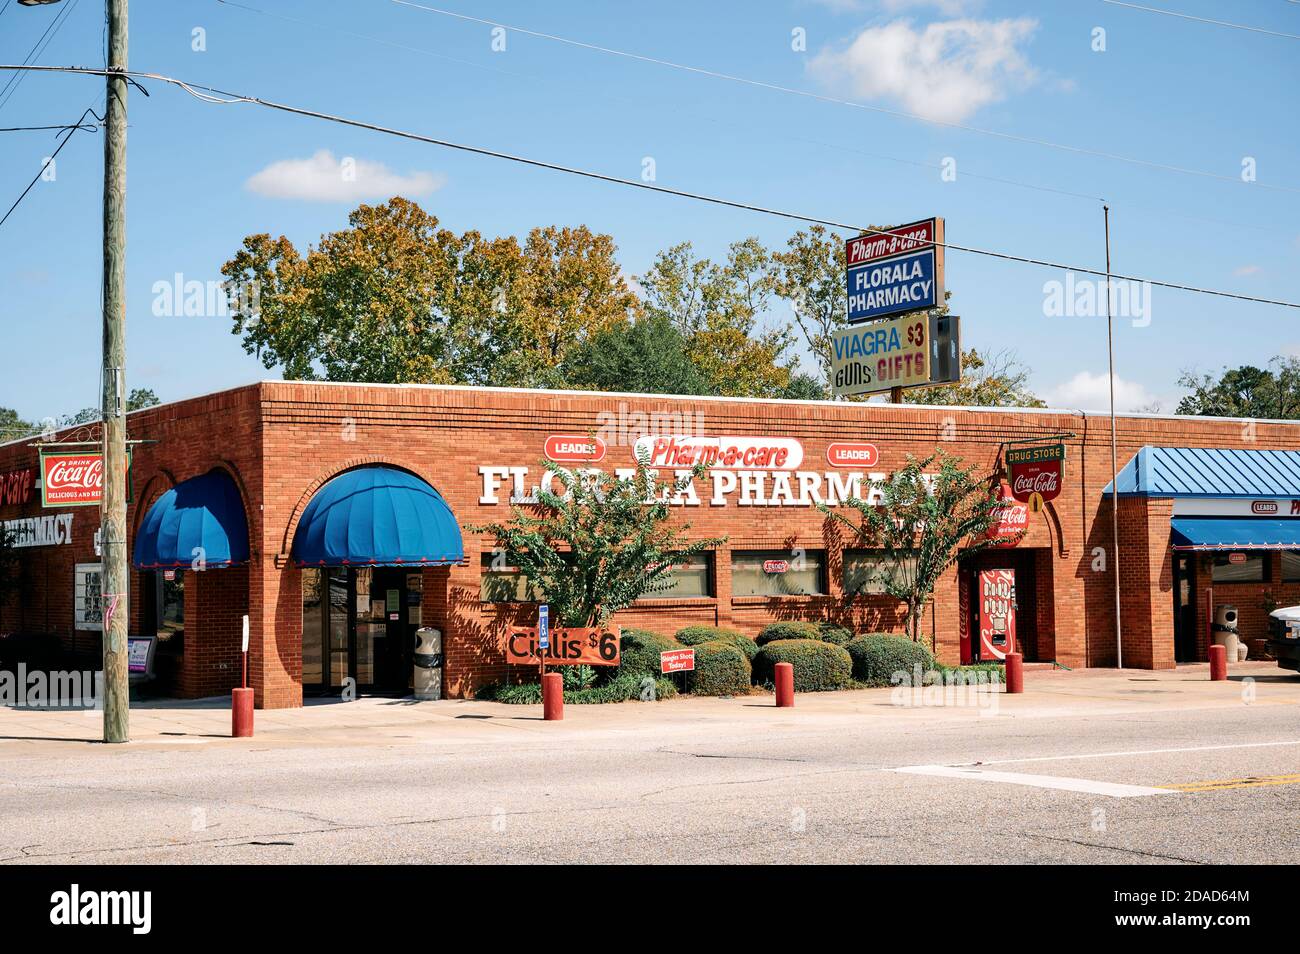 Petite ville ou une pharmacie de ville rurale à Florala Alabama, États-Unis. Banque D'Images